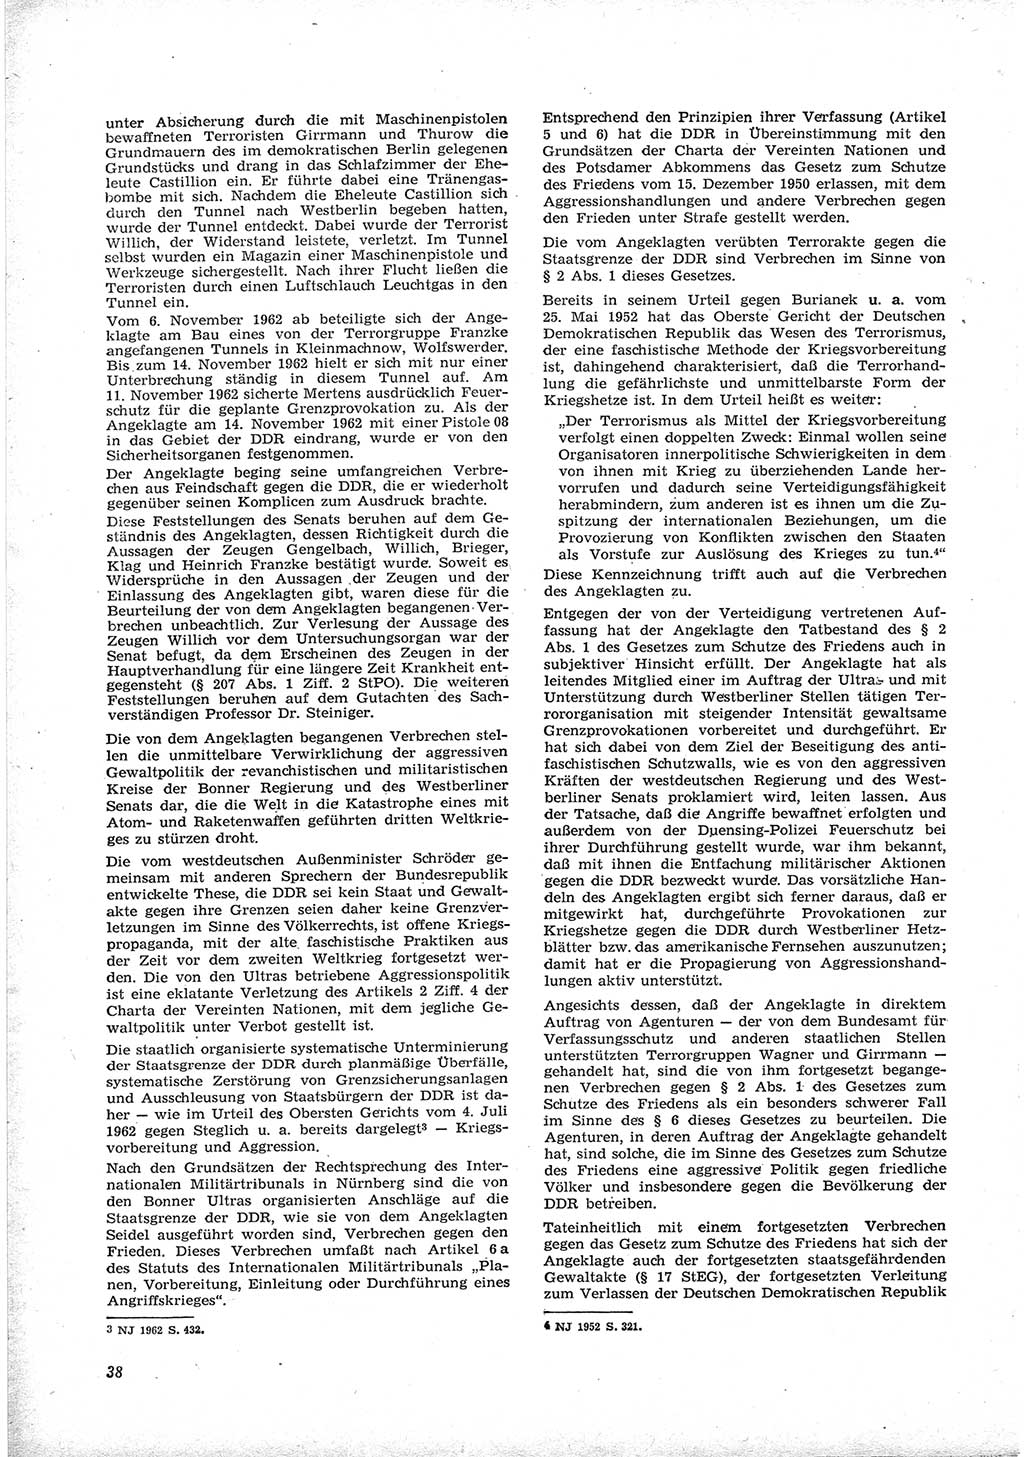 Neue Justiz (NJ), Zeitschrift für Recht und Rechtswissenschaft [Deutsche Demokratische Republik (DDR)], 17. Jahrgang 1963, Seite 38 (NJ DDR 1963, S. 38)